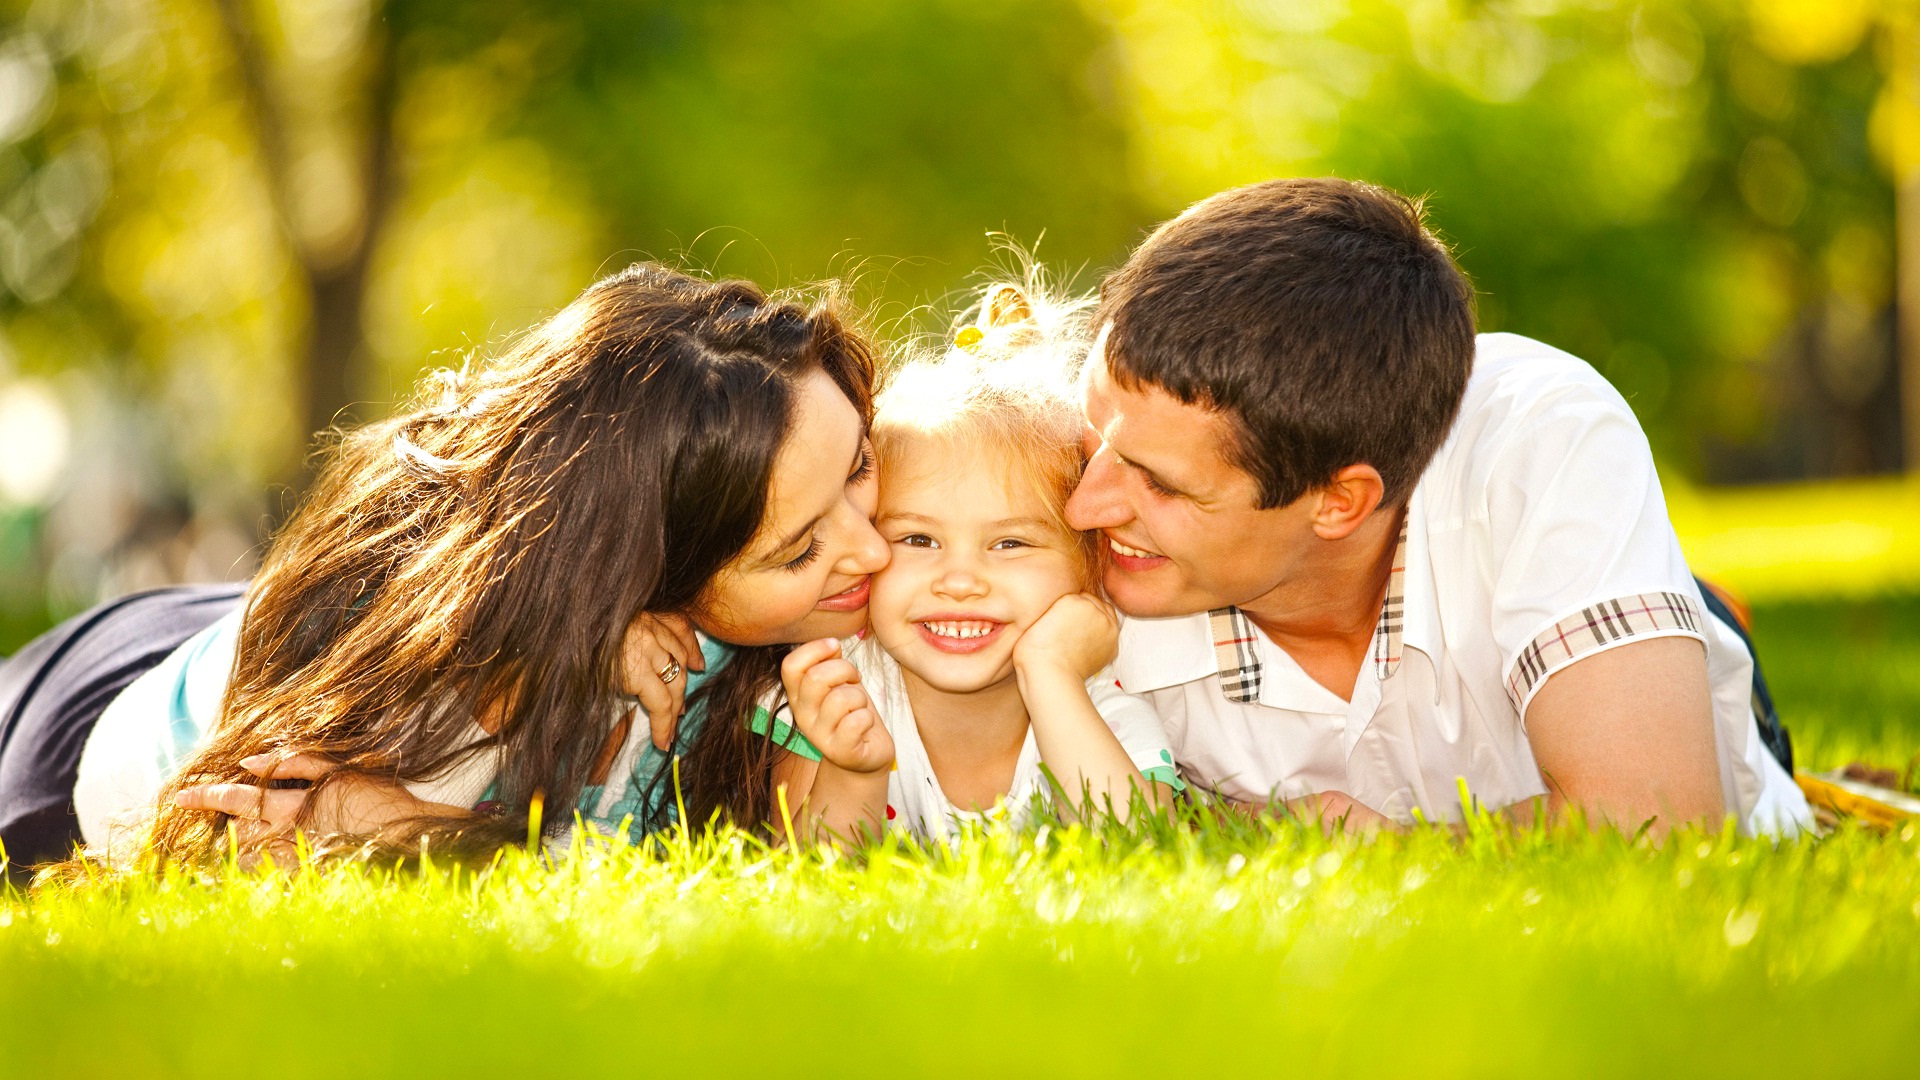 Danh ngôn về gia đình hạnh phúc sẽ khơi gợi niềm tin và sự hy vọng vào tương lai của gia đình bạn. Những câu nói sẽ là động lực để các thành viên trong gia đình chúng ta cùng nhau xây dựng một hạnh phúc bền vững.